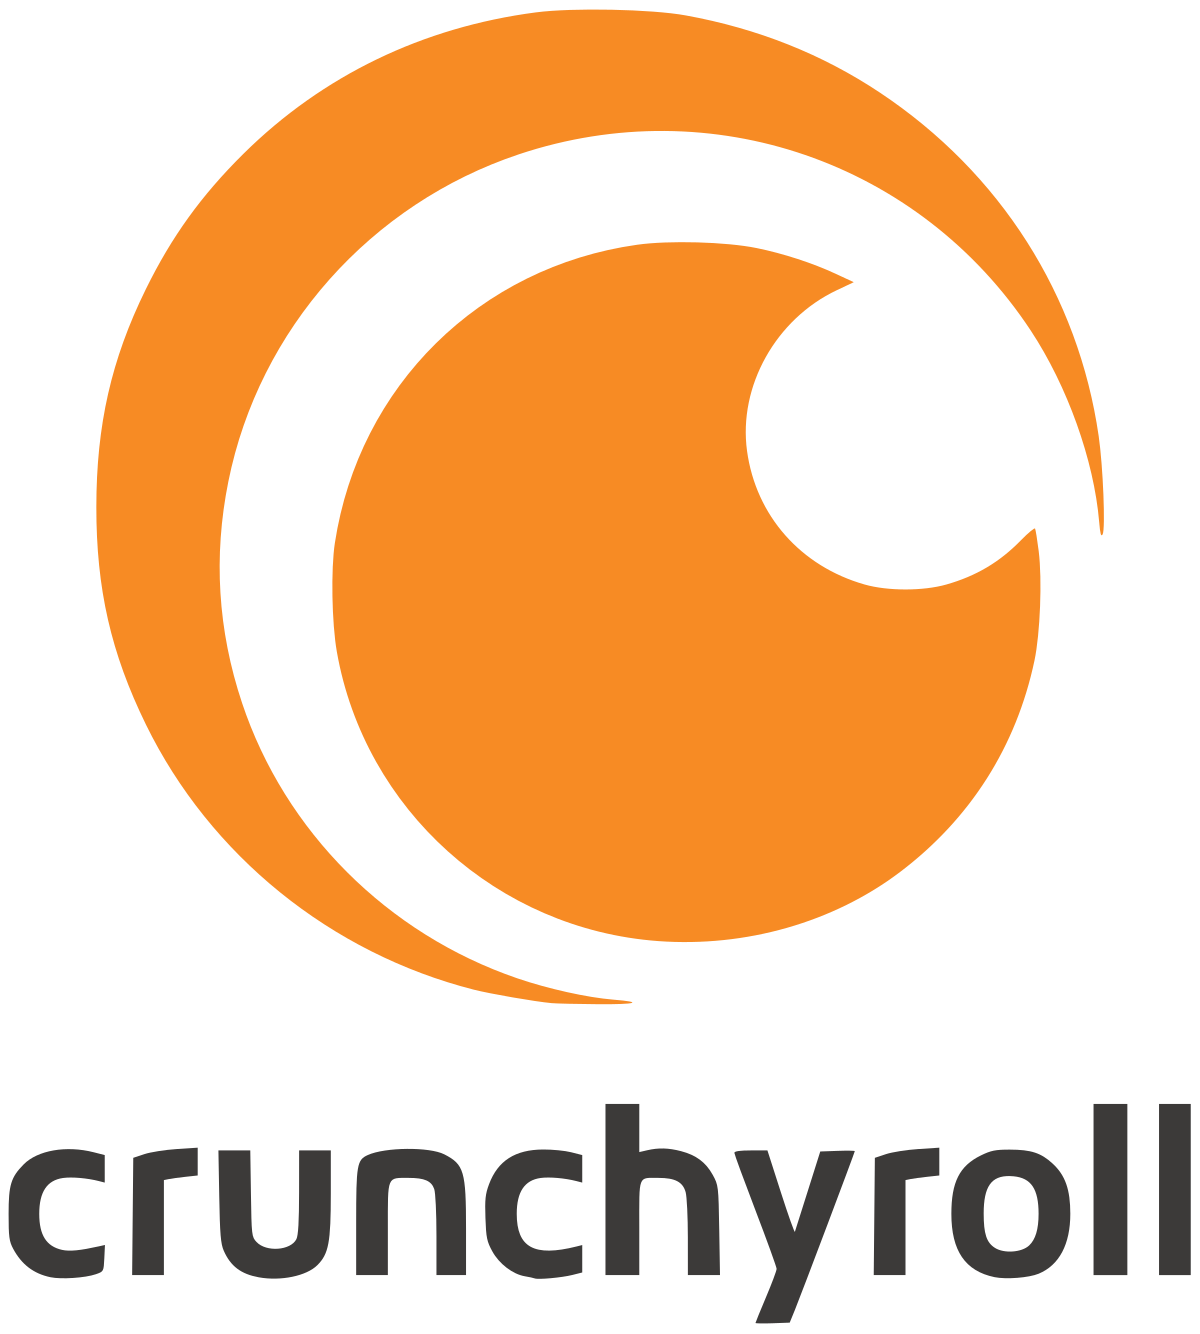 Crunchyroll_Logo.svg.png